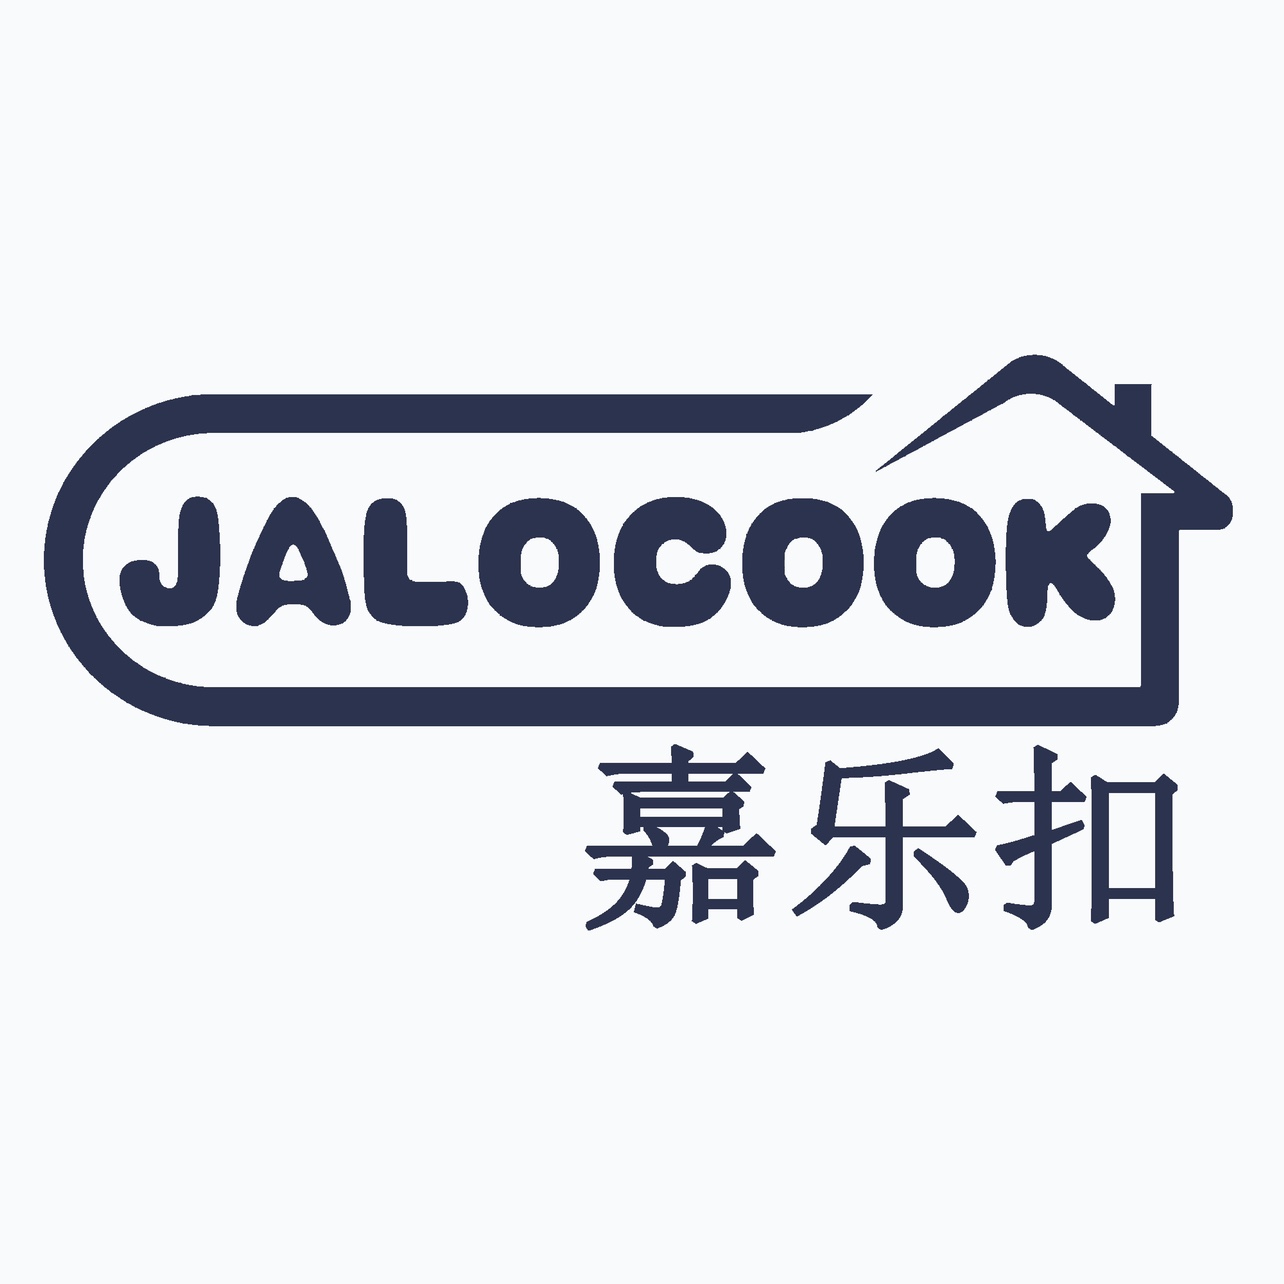  JALOCOOK品牌店